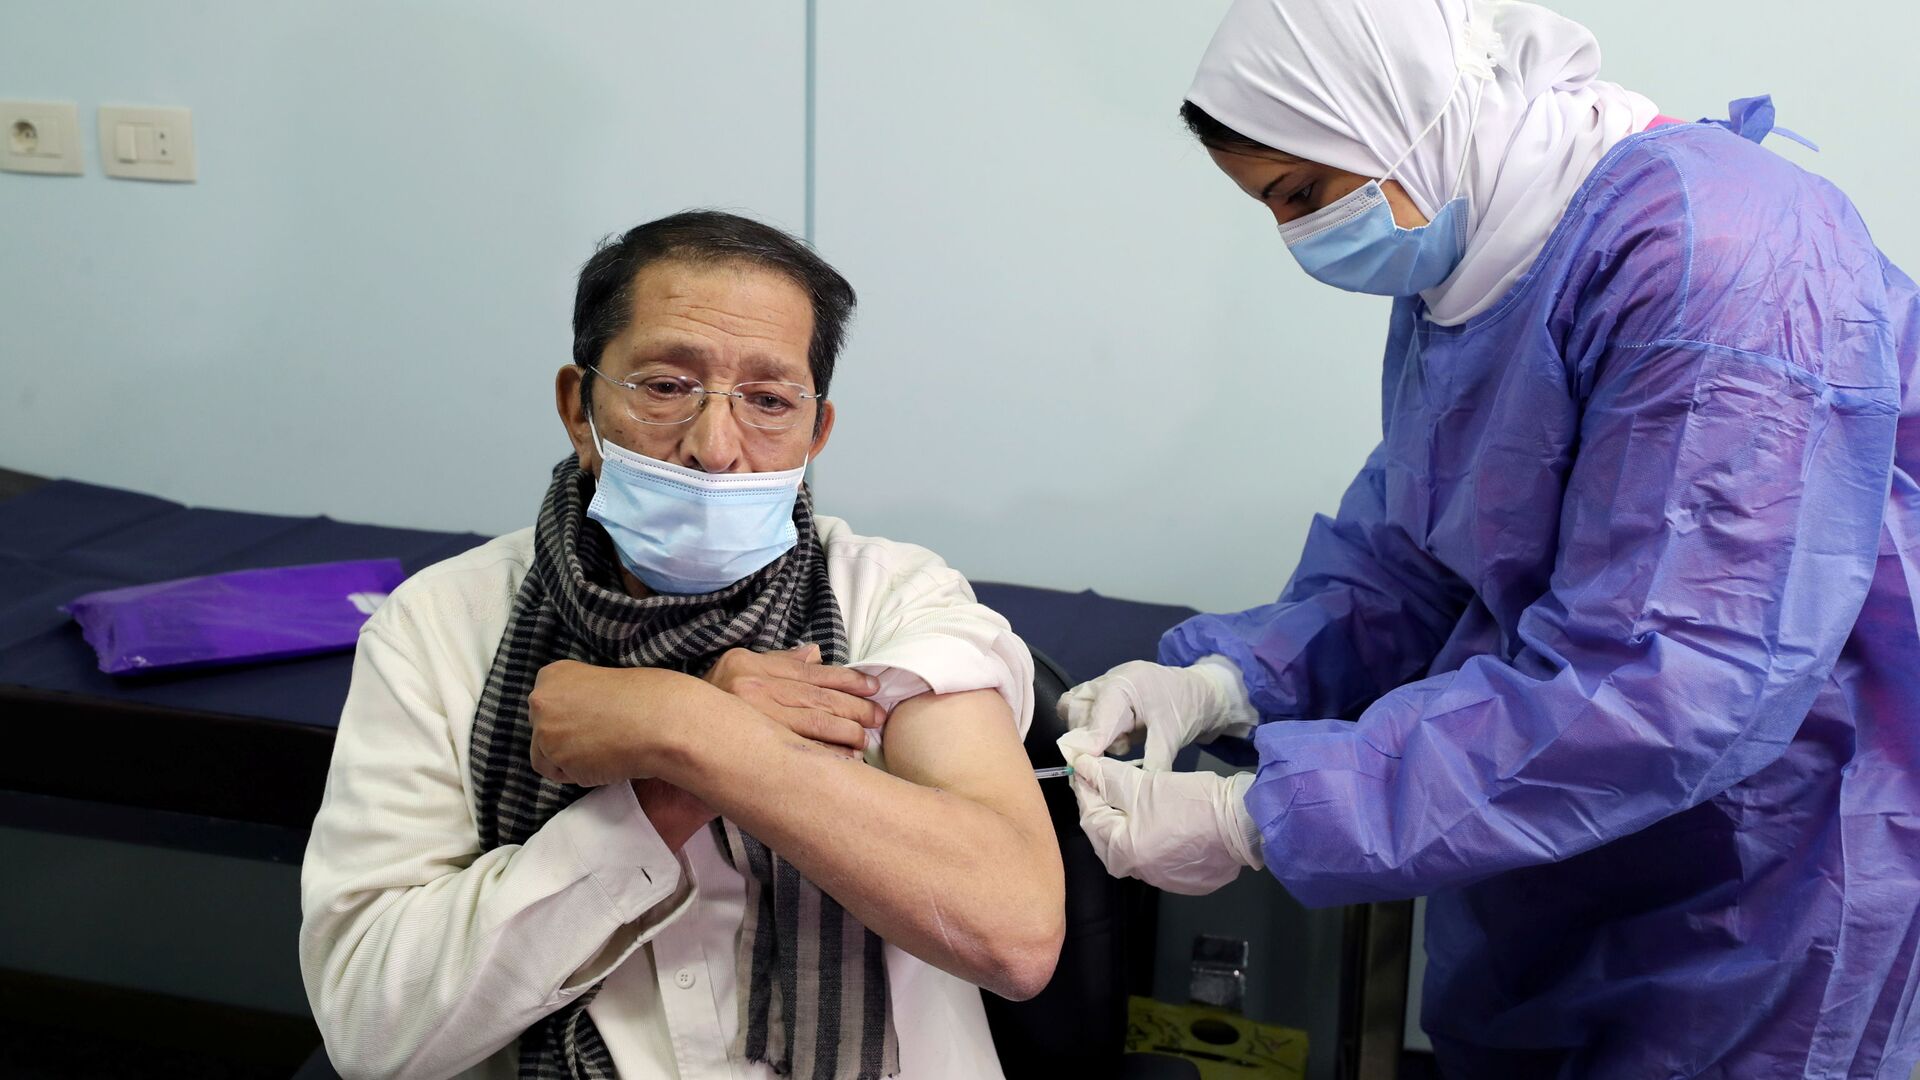 بدء تطعيم واسع النطاق في مصر ضد فيروس كورونا (كوفيد-19)، القاهرة، 4 مارس 2021 - سبوتنيك عربي, 1920, 18.10.2021